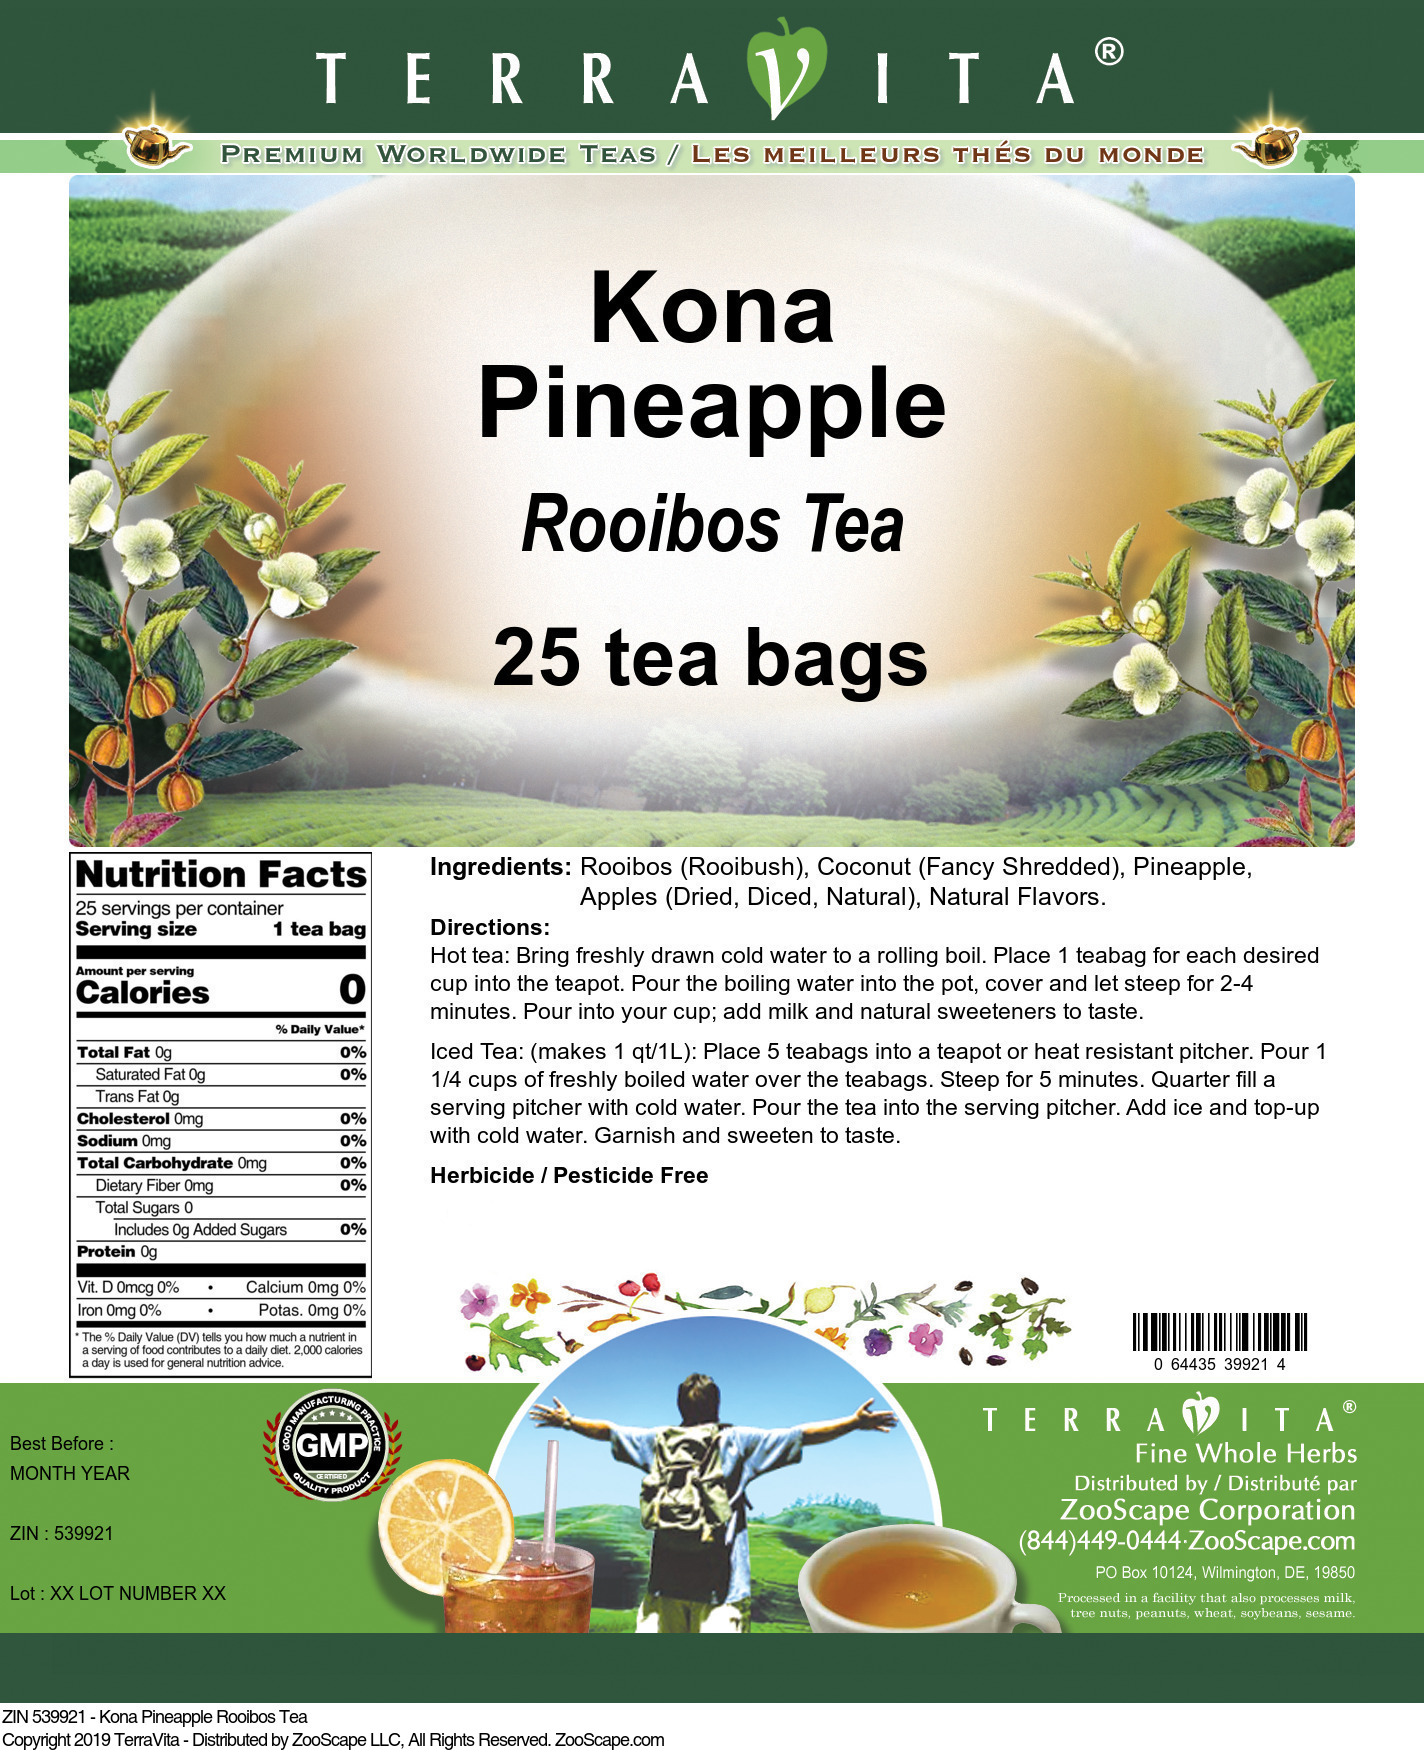 Kona Pineapple Rooibos Tea - Label